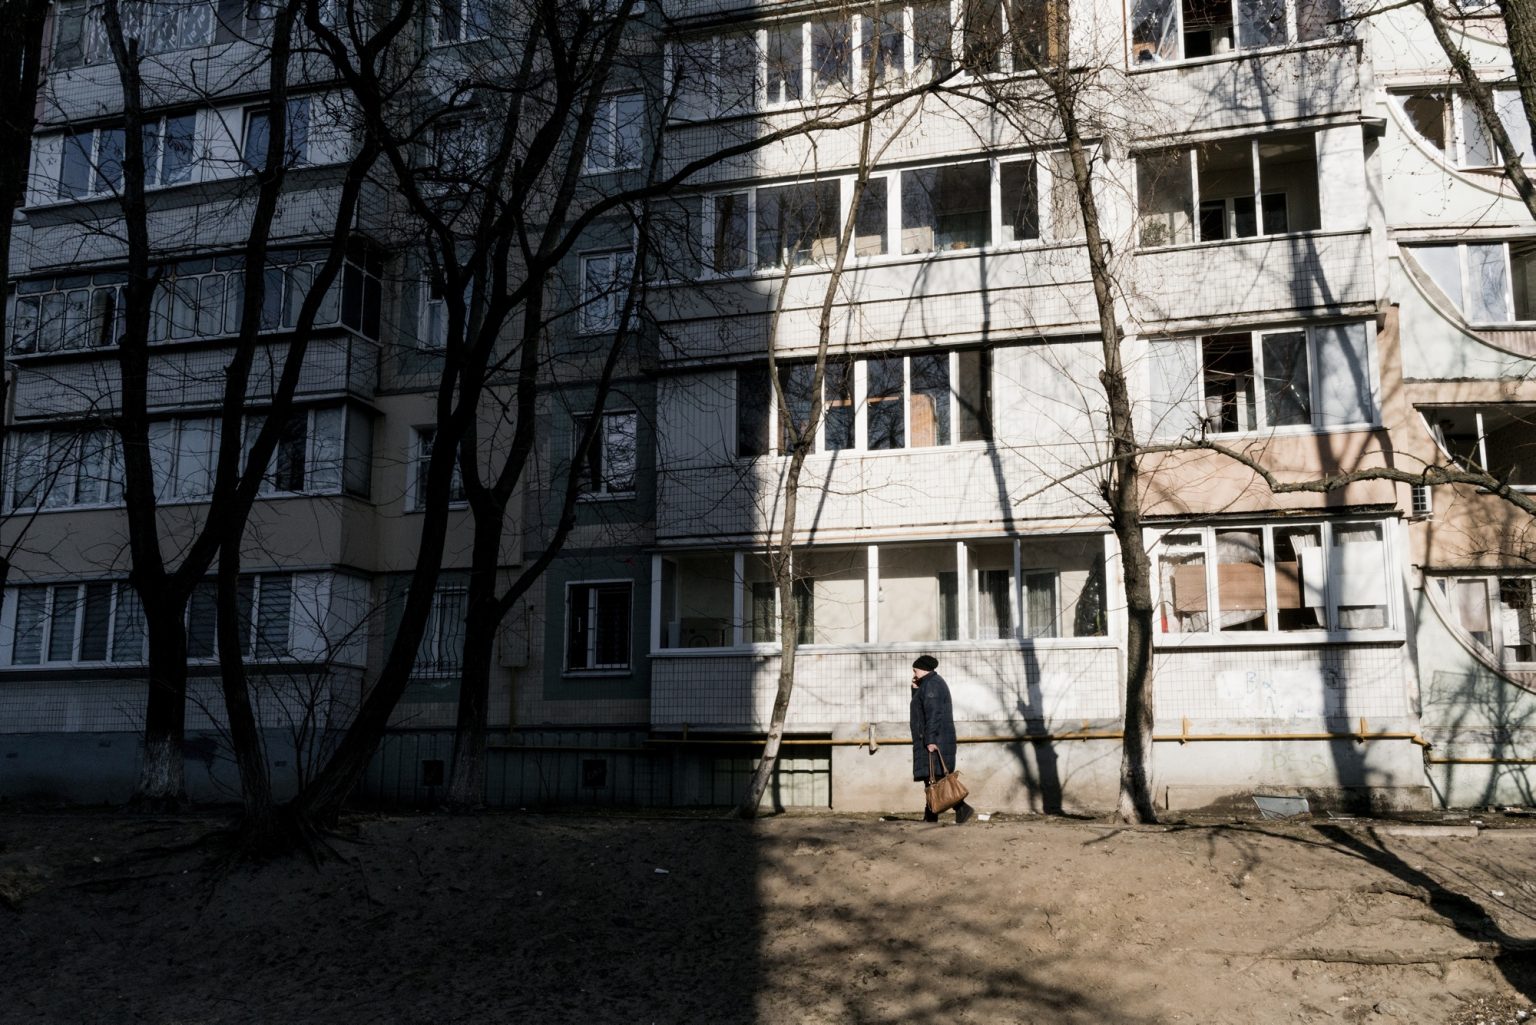 01559197 01559054 UKRAINE, Kyiv. March 21, 2022 - A woman walks in a Kyiv neighborhood.             As Russia invades Ukraine, thousands of Ukrainians are fleeing the country to find shelter in bordering countries. 
---------
Con l'invasione russa ai danni dell'Ucraina, migliaia di ucraini sono in fuga dalla nazione d'origine per cercare rifugio nelle nazioni confinanti.*** SPECIAL   FEE   APPLIES ****** SPECIAL   FEE   APPLIES *** *** Local Caption *** 01559197